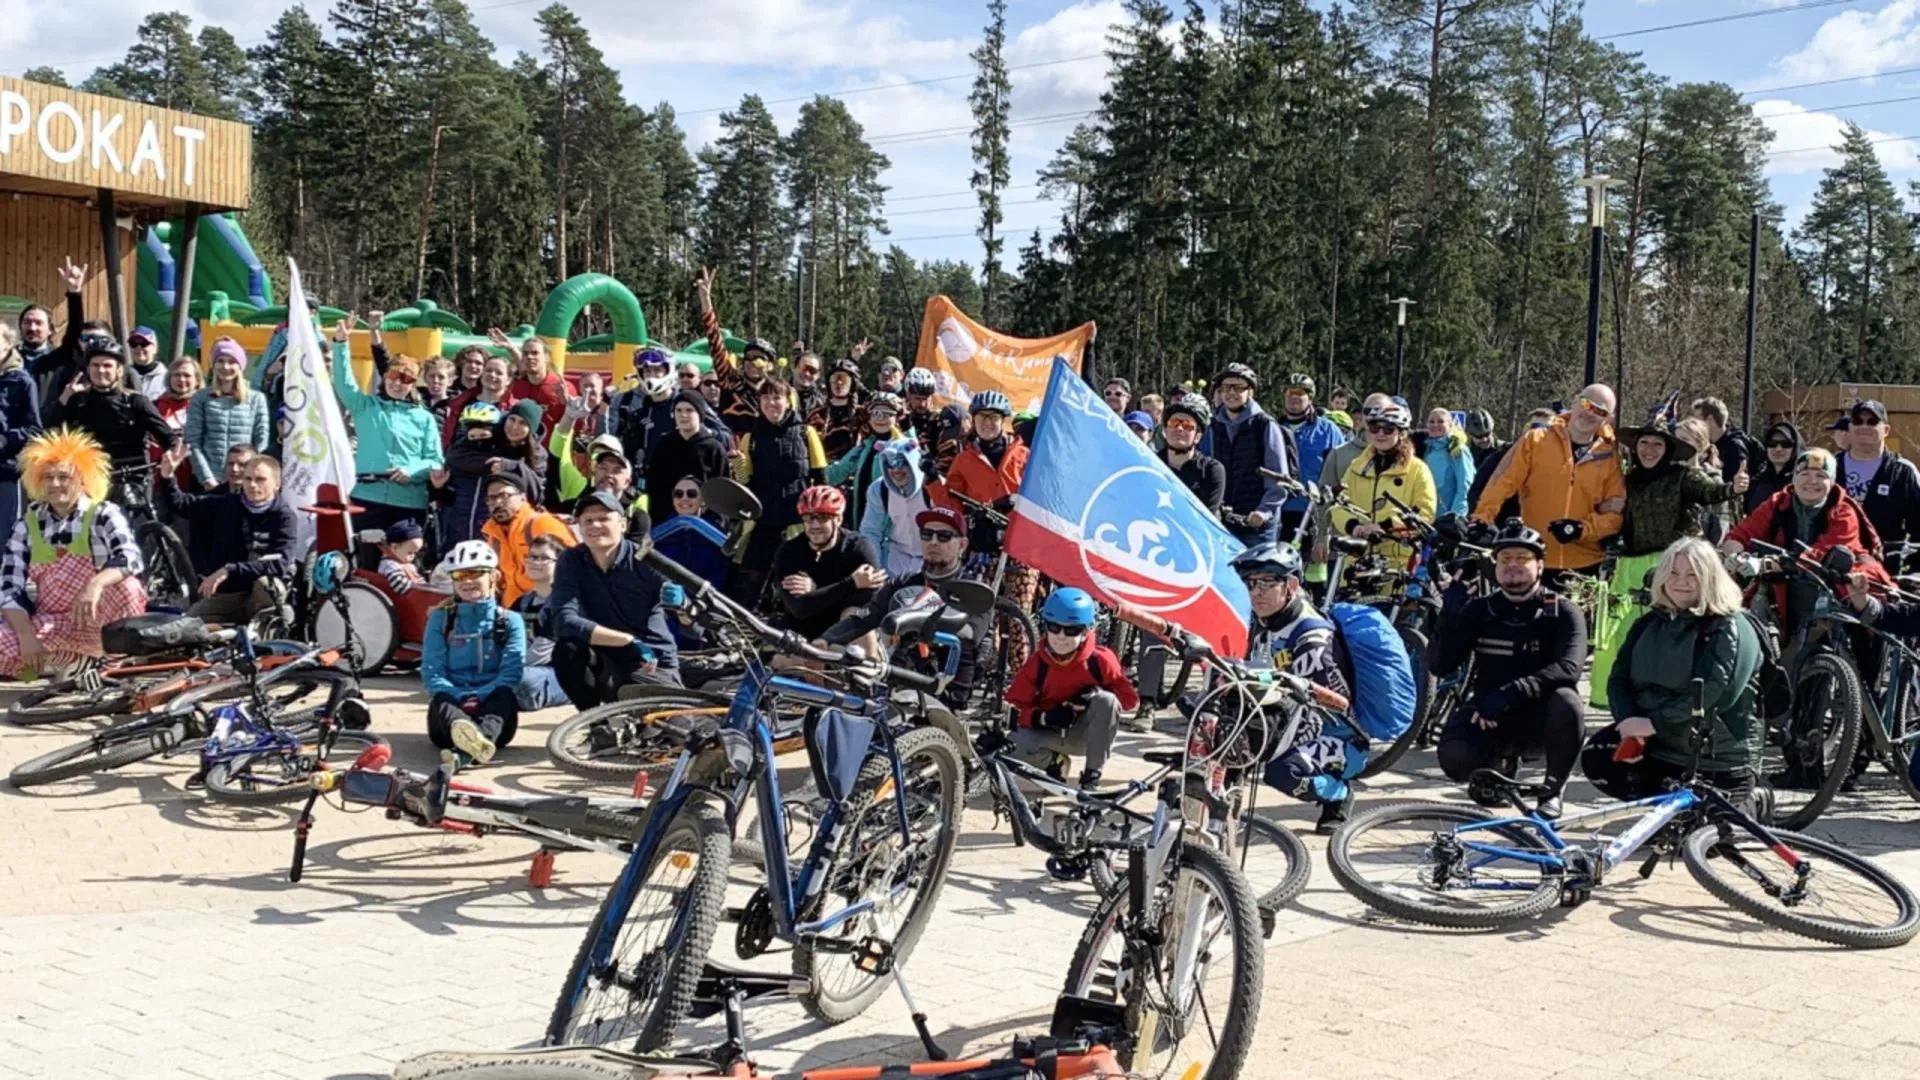 Велопробег в честь открытия сезона организовали велолюбители из подмосковной Балашихи